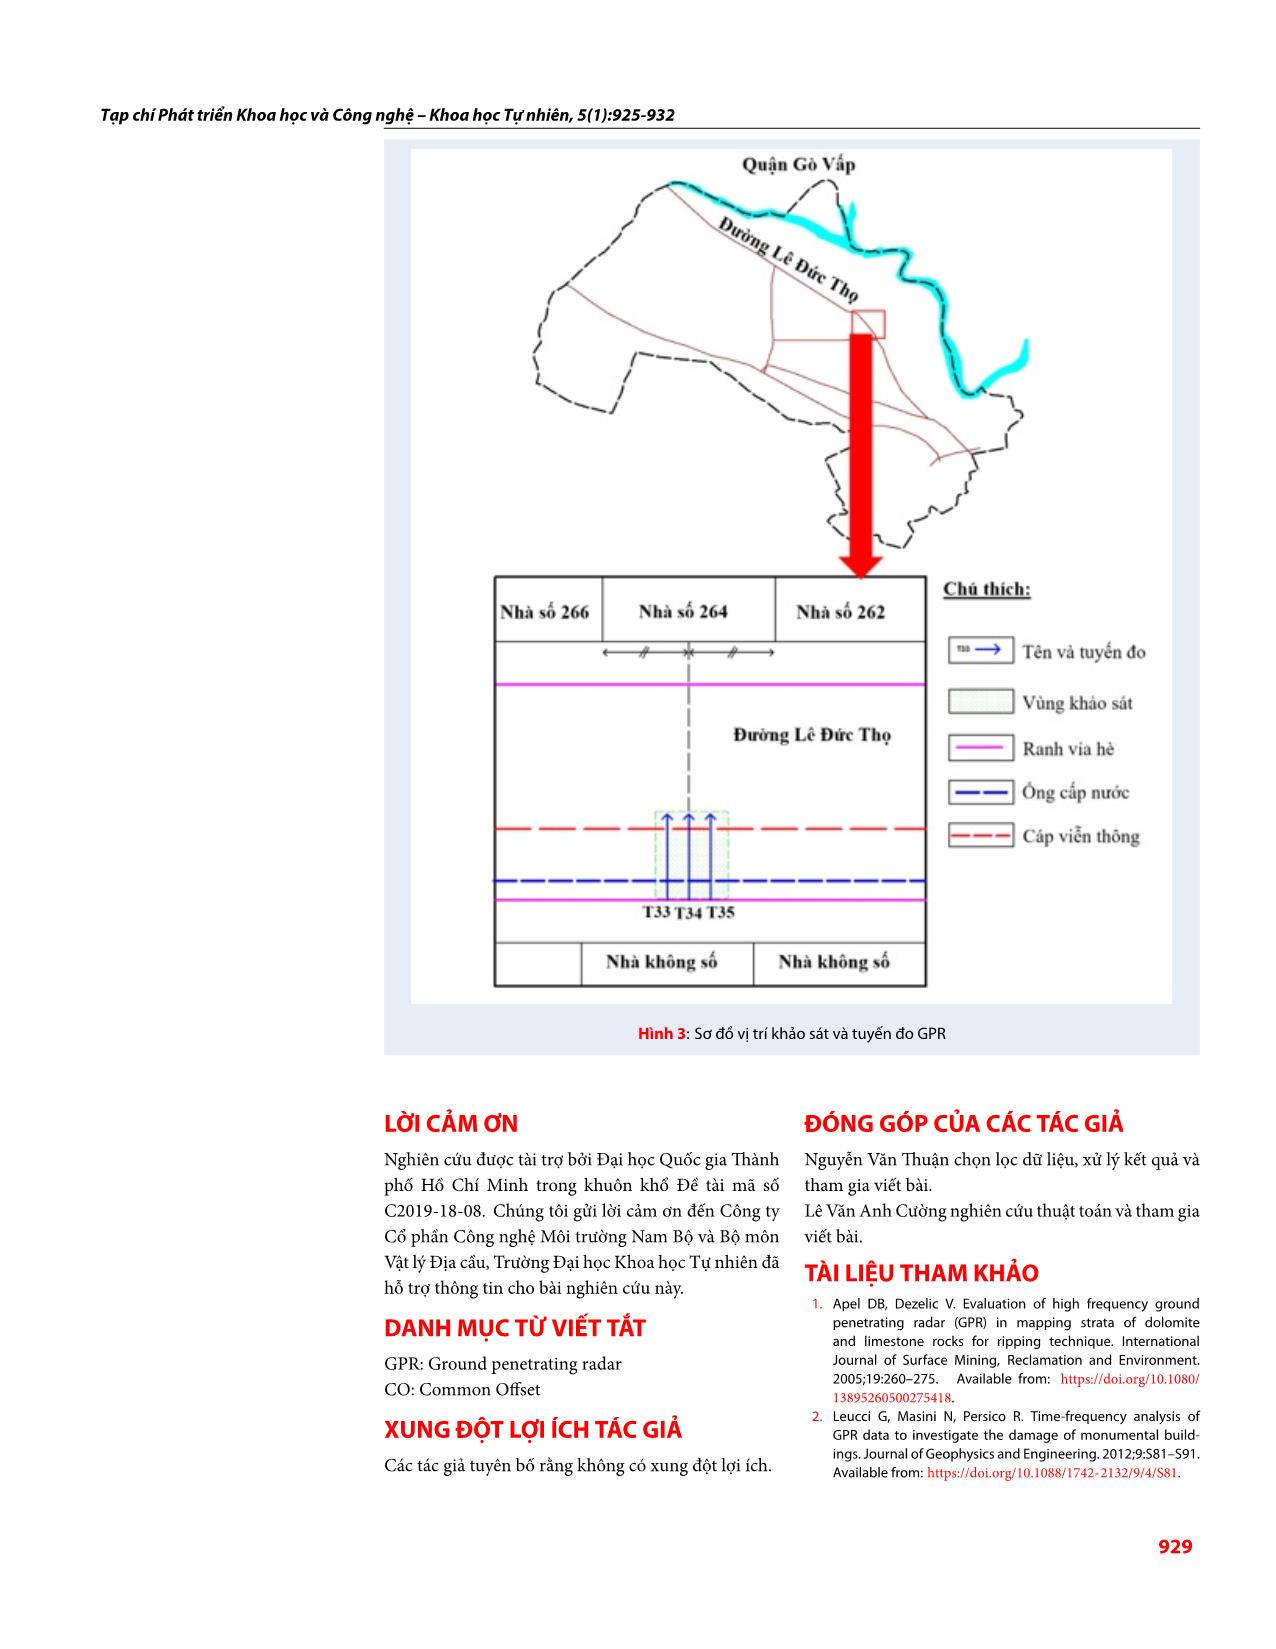 Ứng dụng sai phân năng lượng của sóng điện từ tần số cao trong phát hiện dị vật ngầm tại thành phố Hồ Chí Minh, Việt Nam trang 5